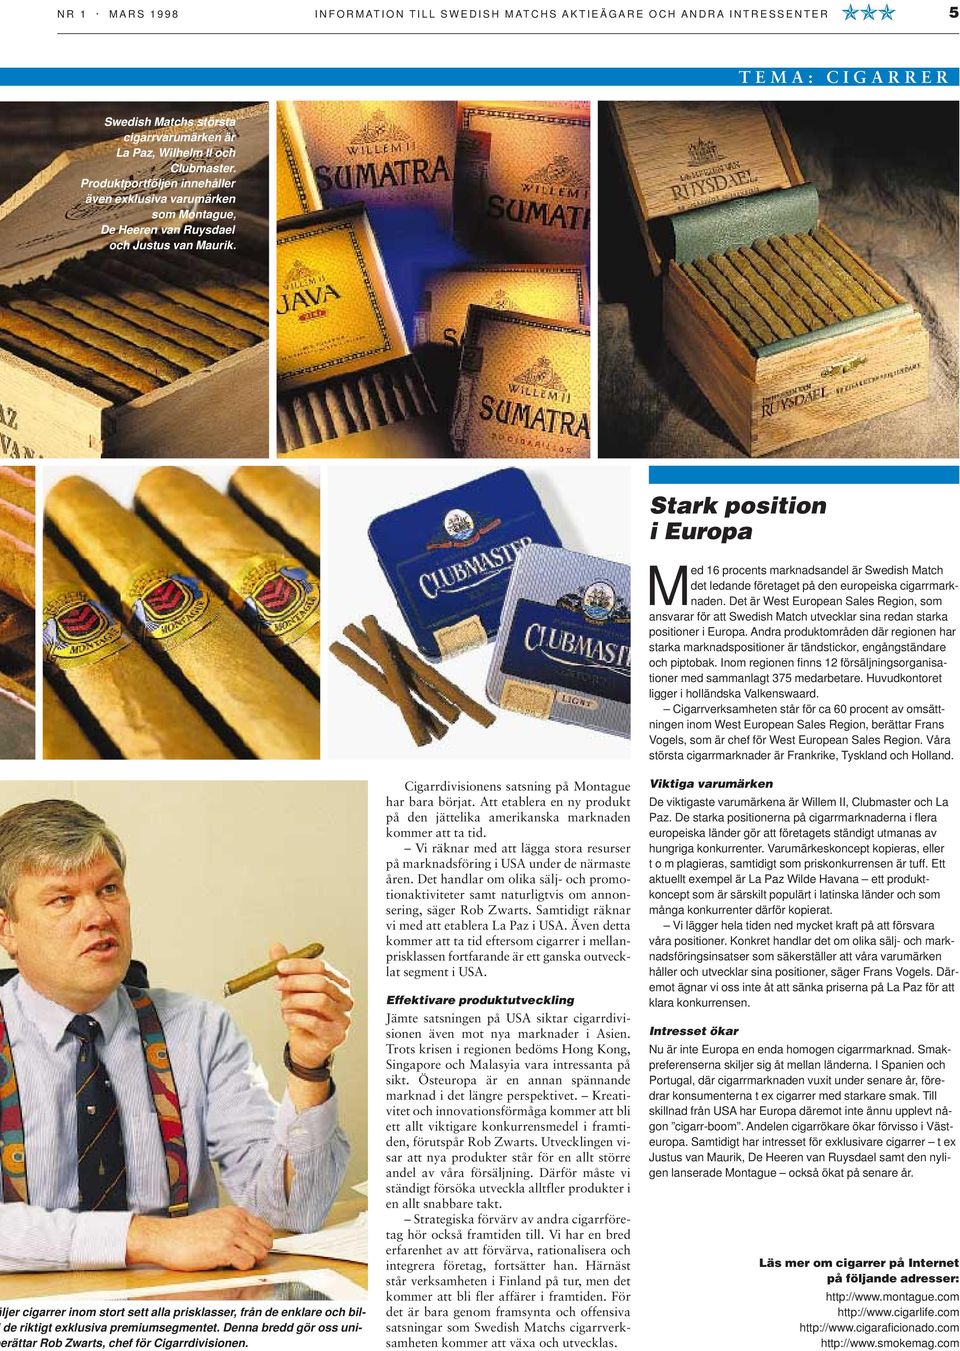 Stark position i Europa ljer cigarrer inom stort sett alla prisklasser, från de enklare och bilde riktigt exklusiva premiumsegmentet.